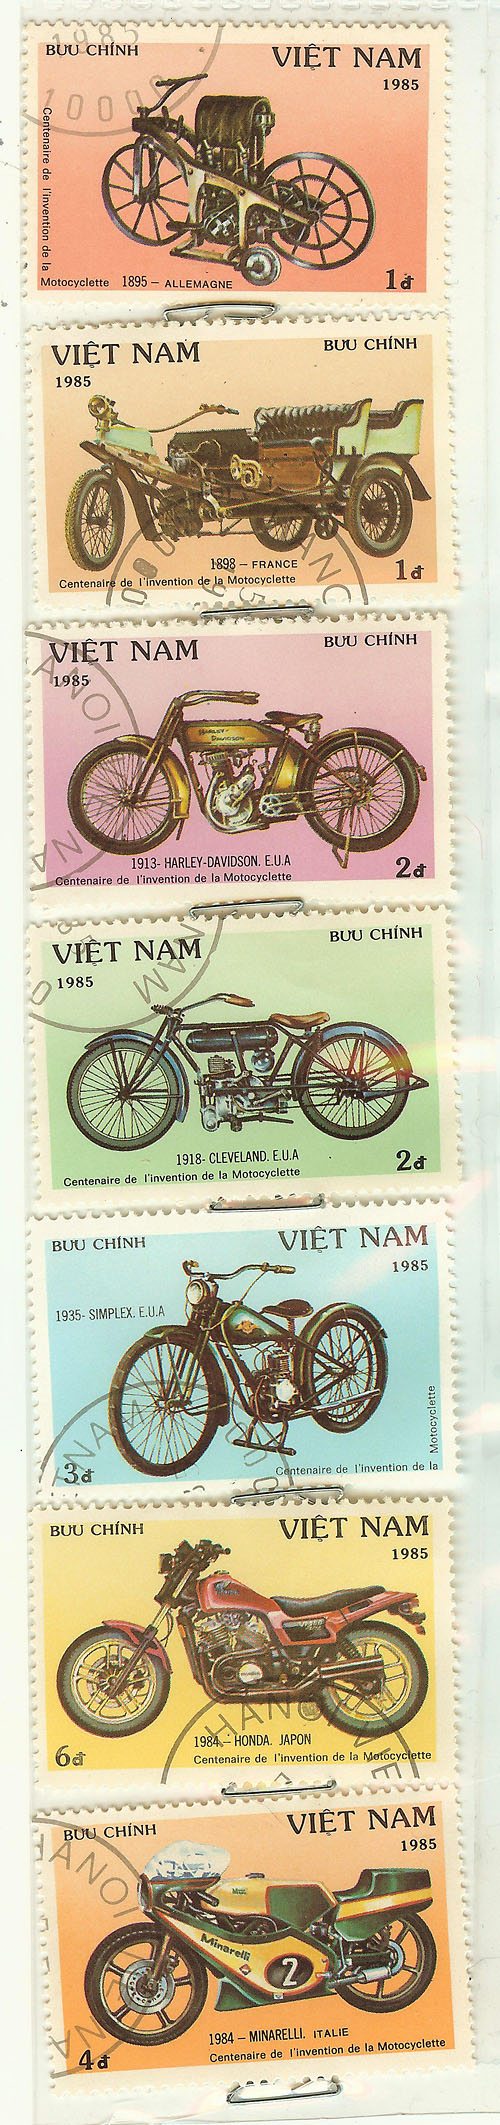 摩托车邮票-越南